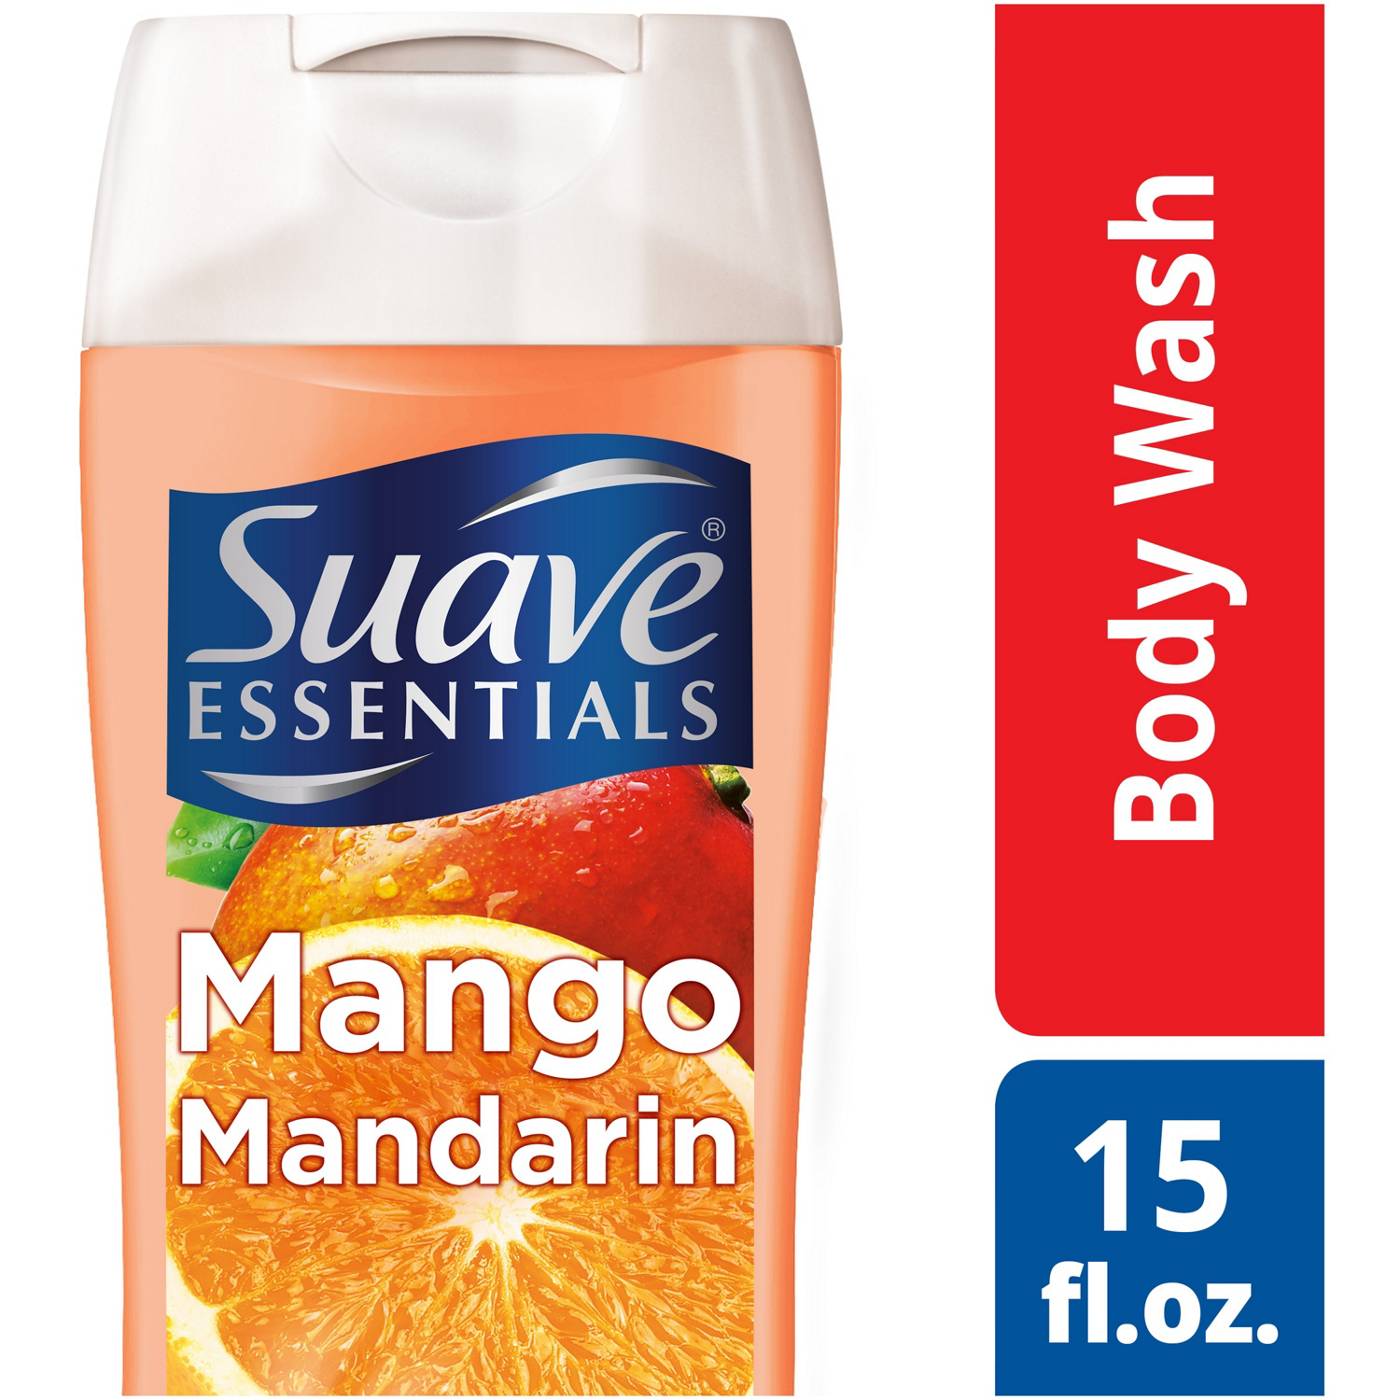 Suave Essentials Mango Mandarin Body Wash; image 4 of 4